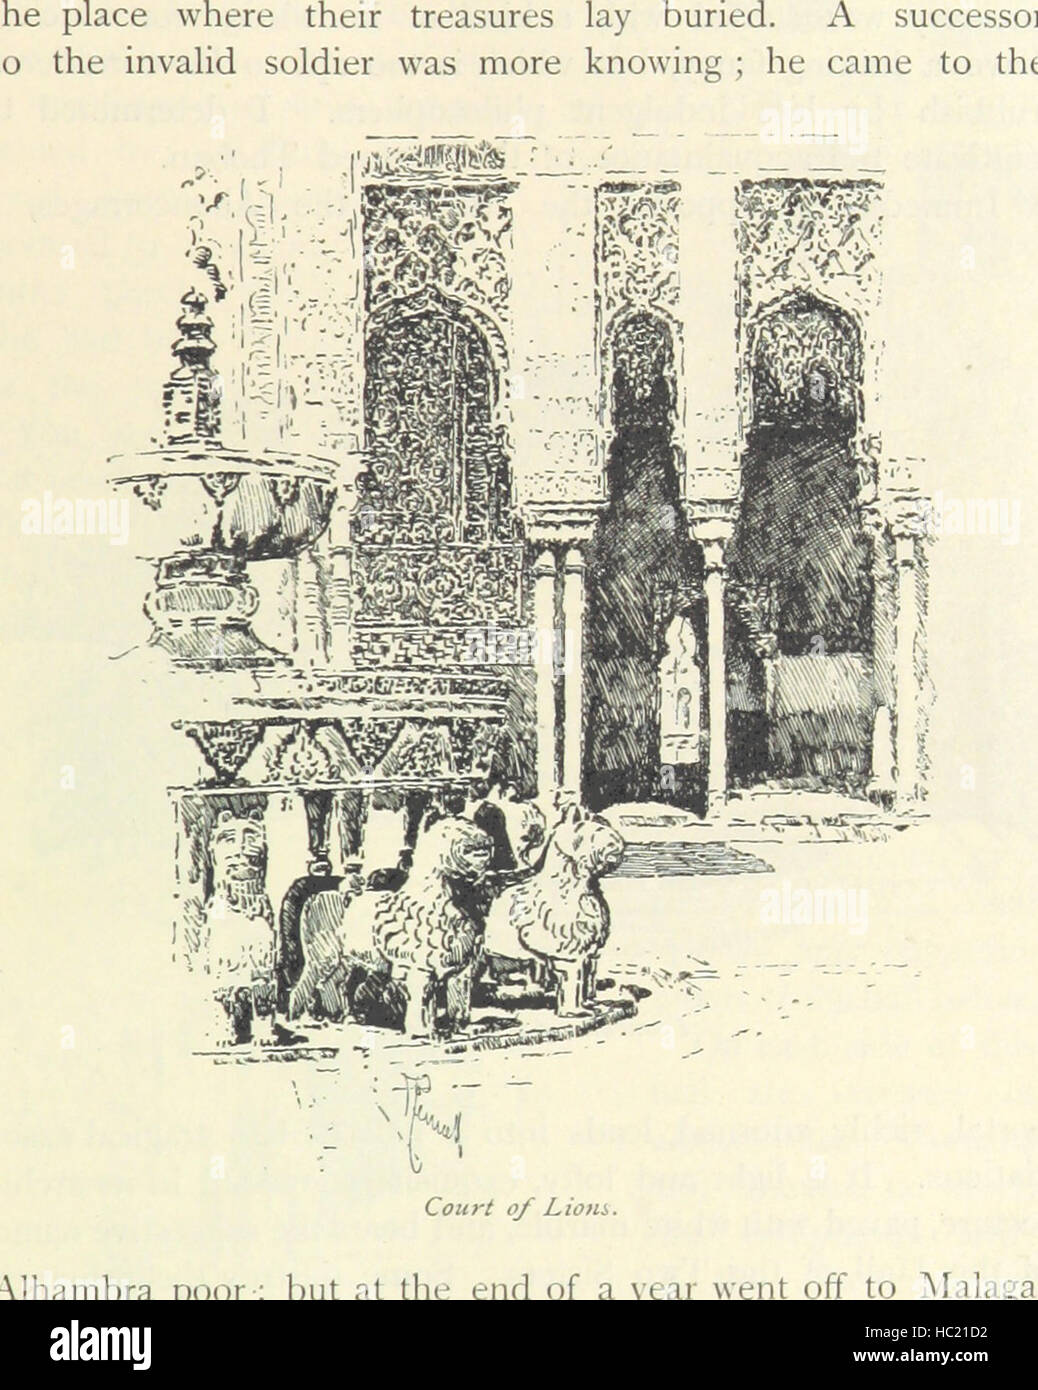 Bild entnommen Seite 97 von ' The Alhambra... Mit einer Einführung von E. R. Pennell. Illustriert mit Zeichnungen von J. Pennell genannten Orte "Bild entnommen Seite 97 von ' The Alhambra mit Stockfoto